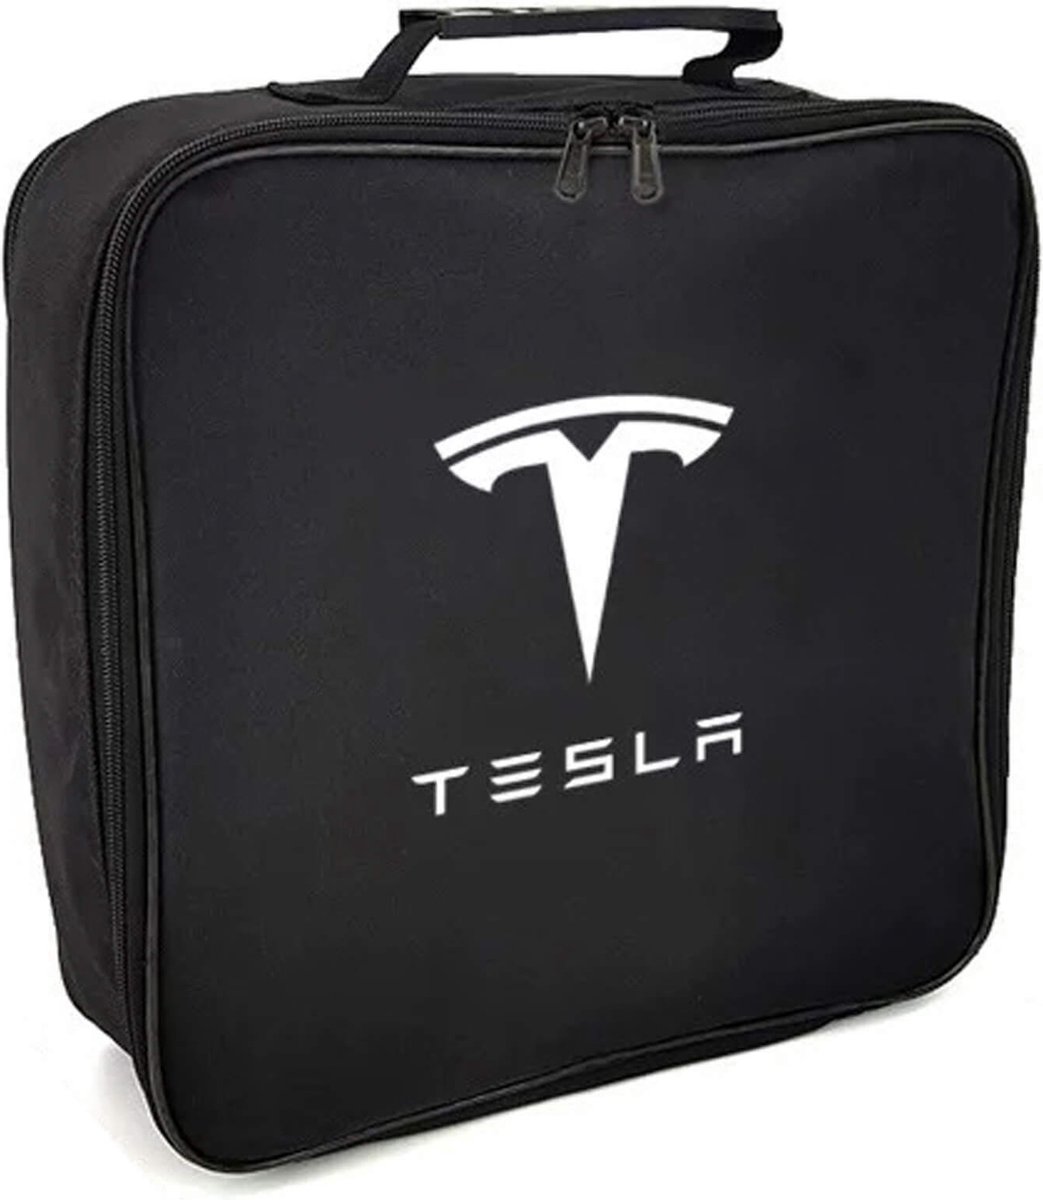 Tesla opbergtas voor laadkabel elektrische auto - Vierkant